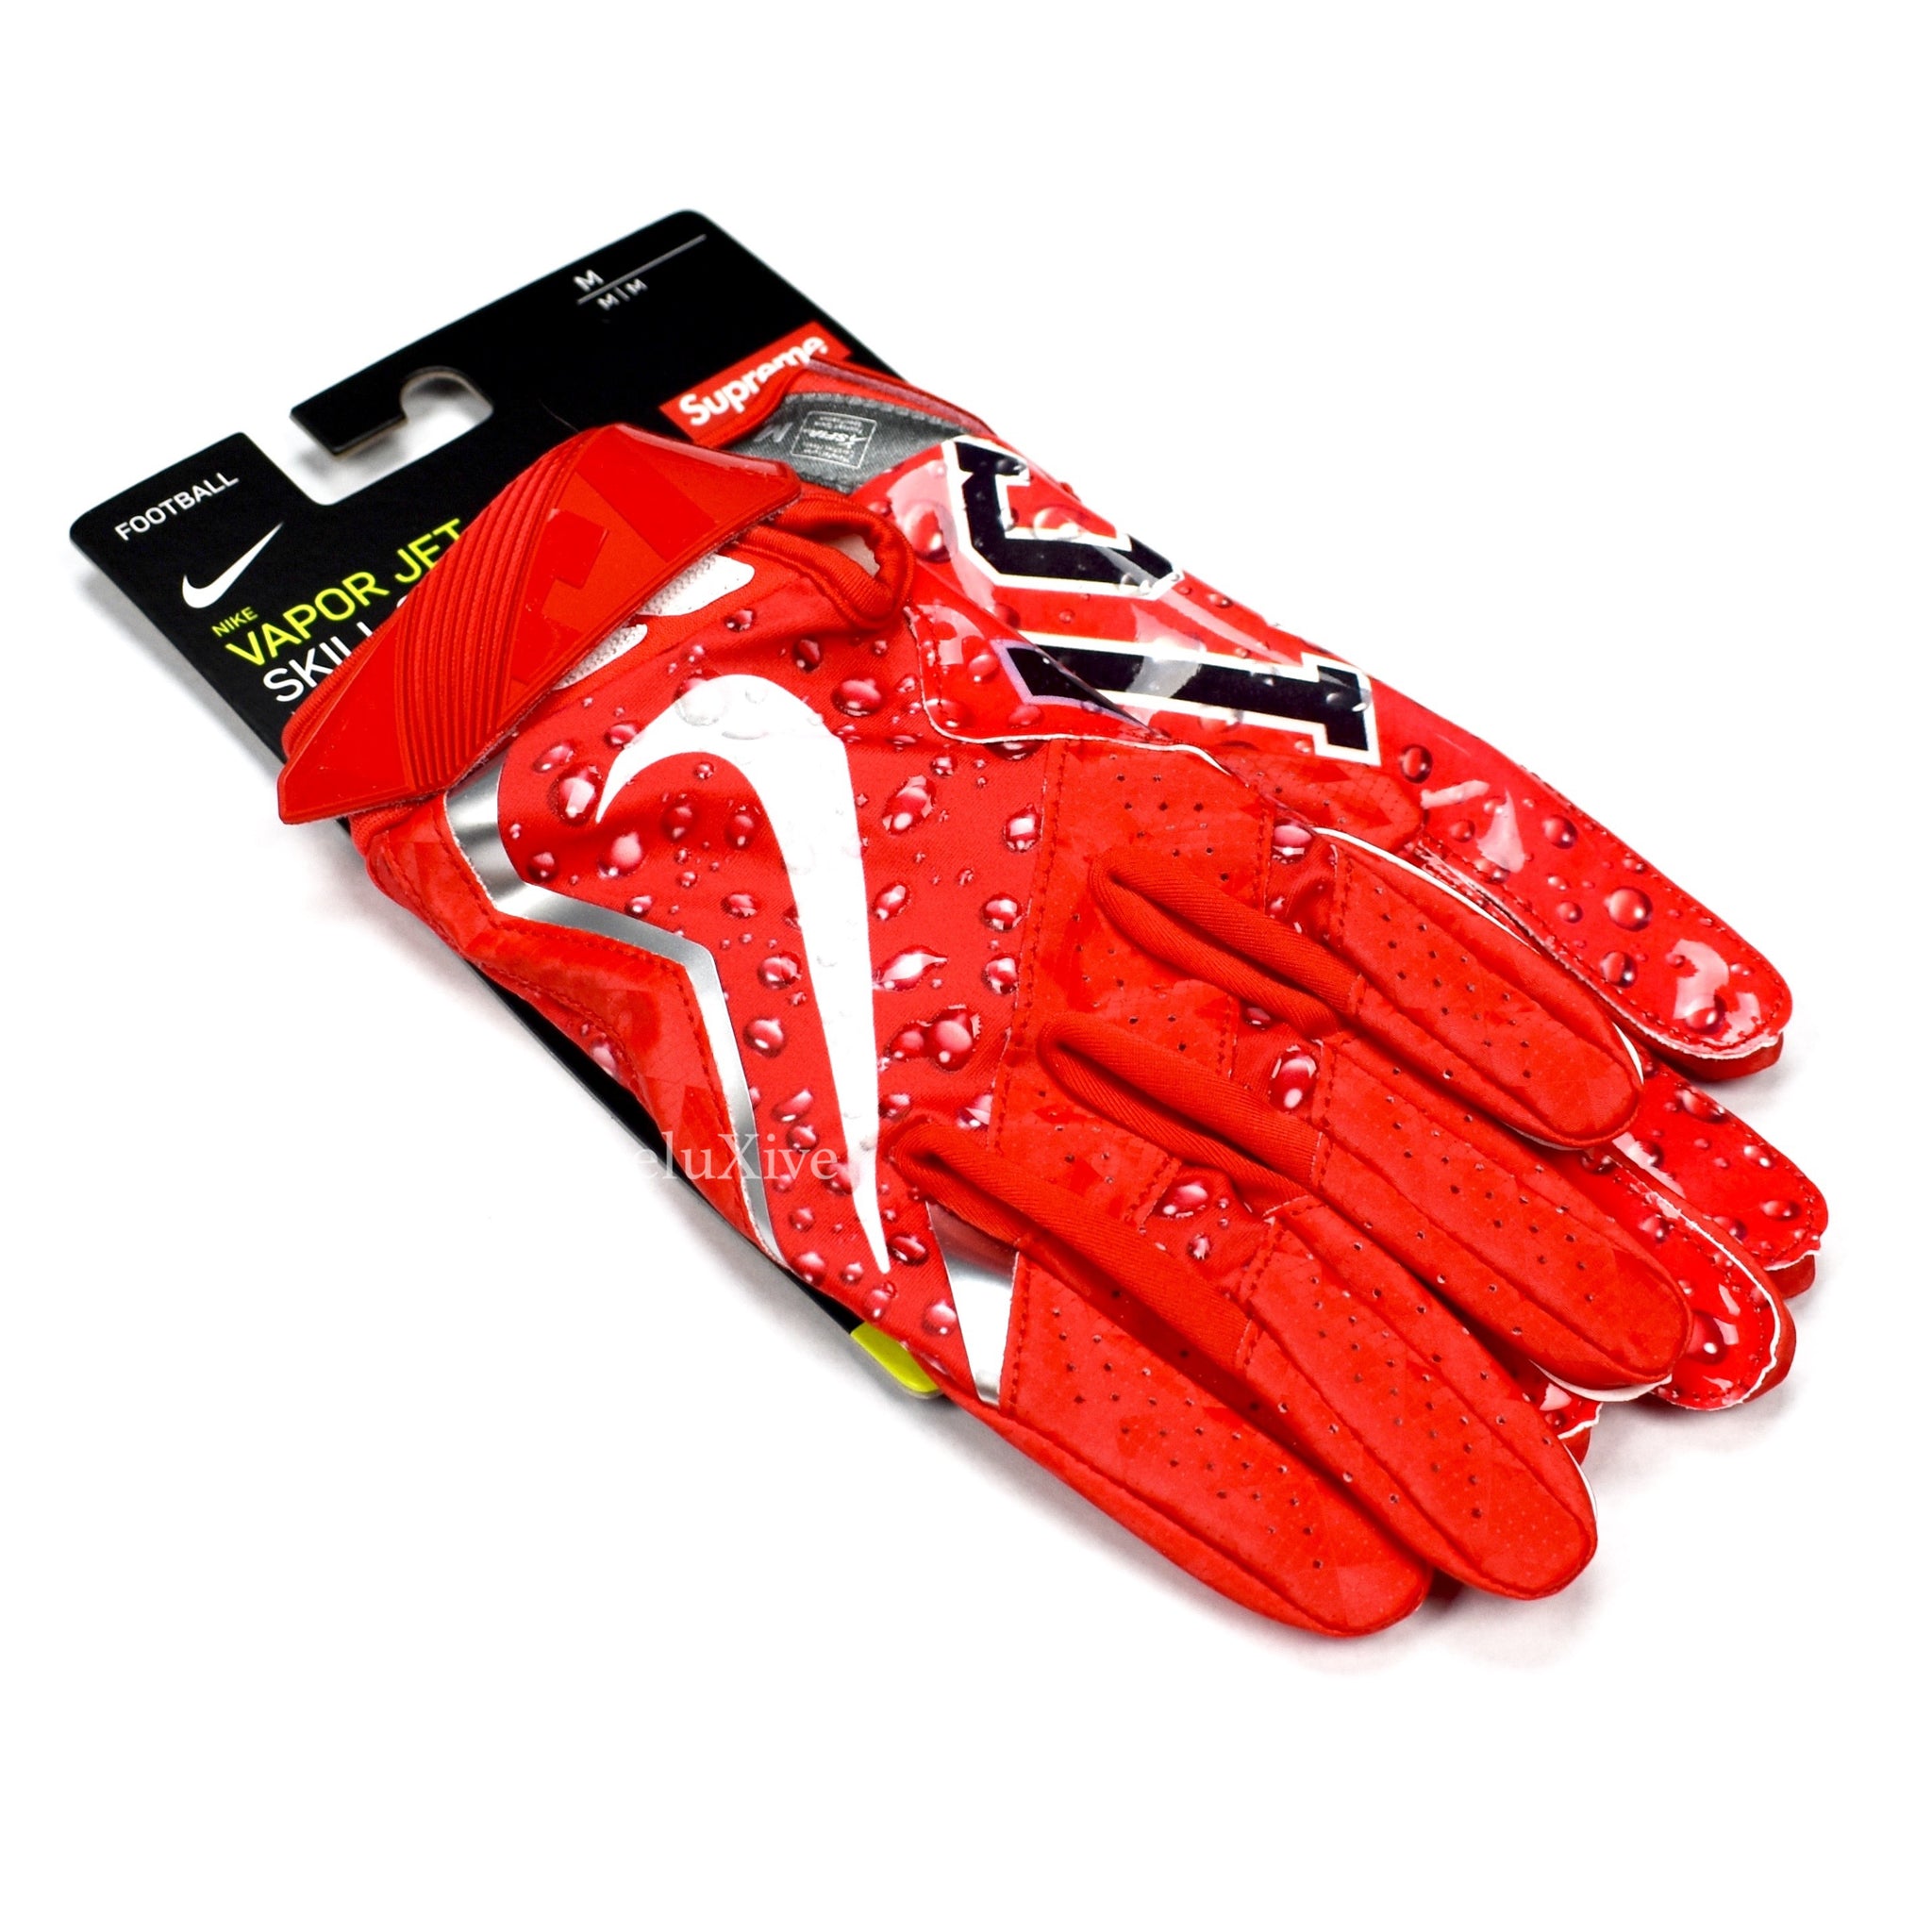 SUPREME WEEK 19 FW18 PICKUPS REVIEW Nike Vapor Jet 4.0 Football Gloves 